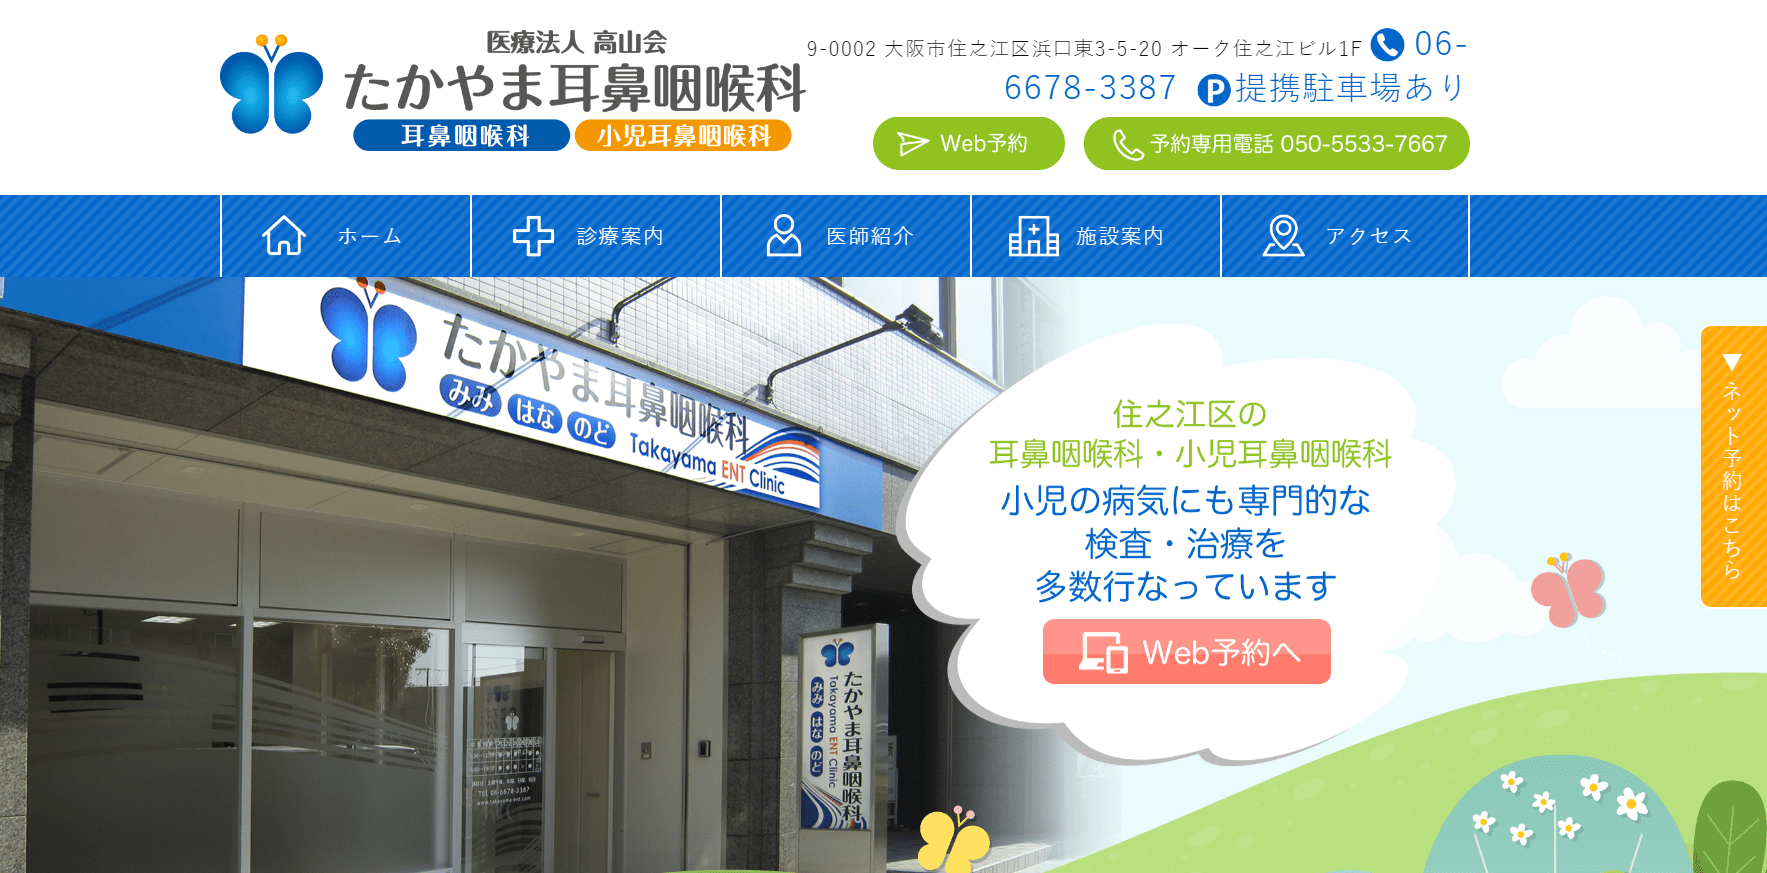 大阪市で評判の耳鼻咽喉科クリニック10選 たかやま耳鼻咽喉科